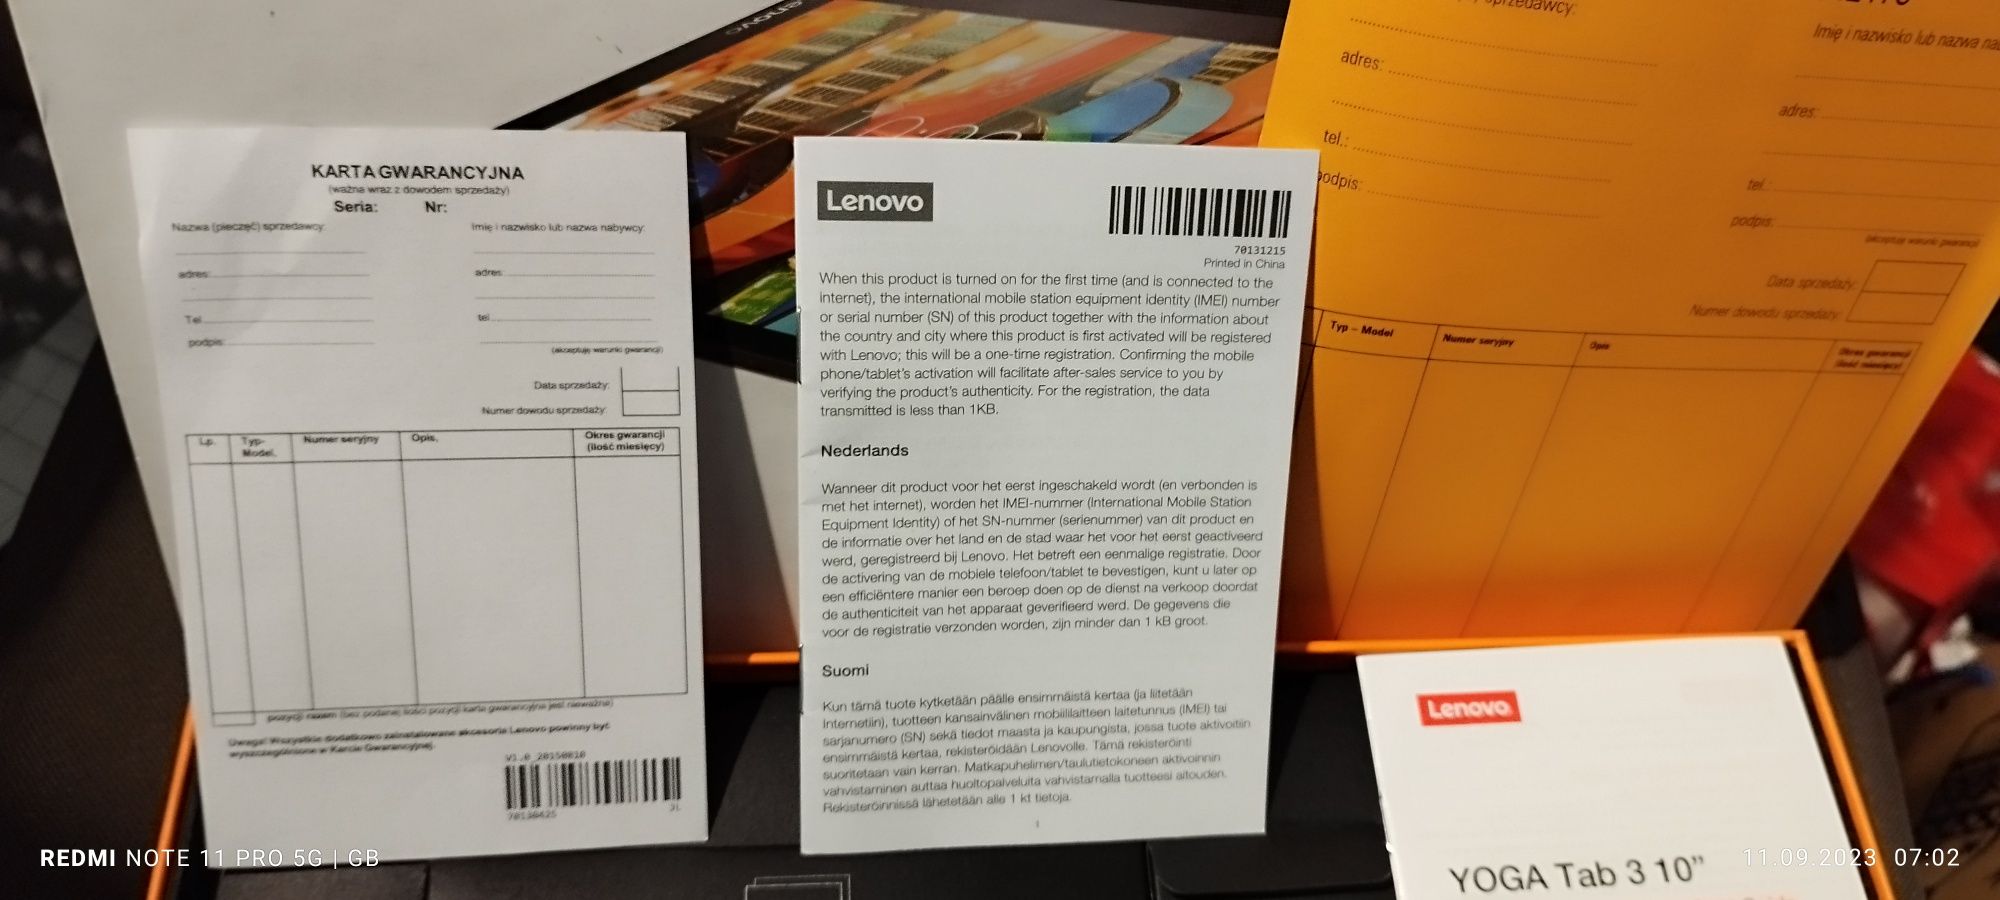 Sprzedam pudełko po tablecie Lenovo